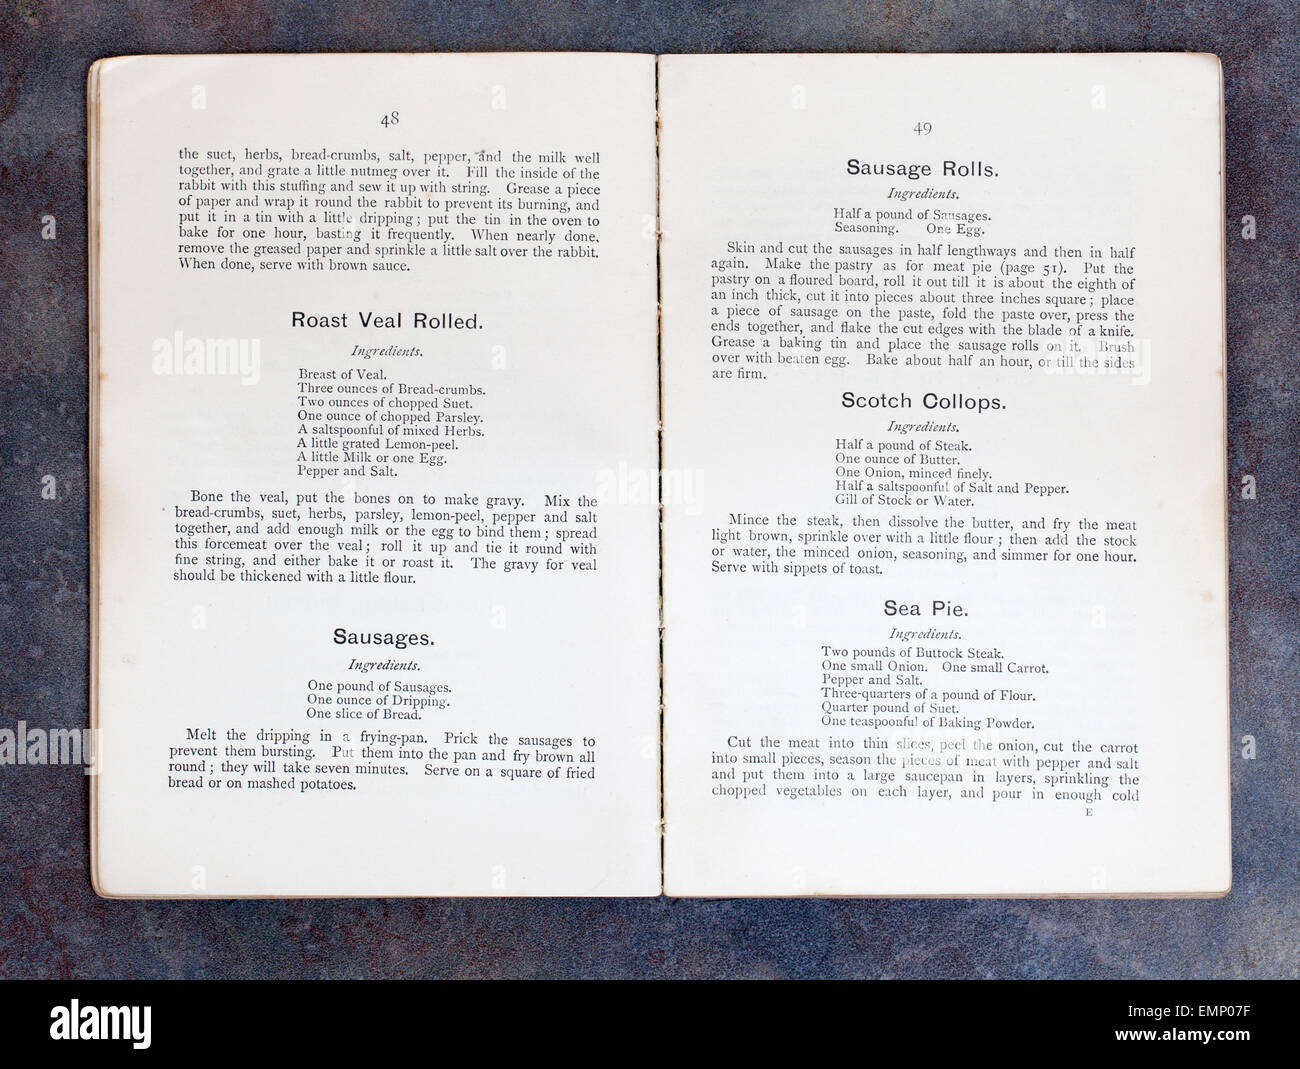 Einfach Kochen Rezepte - das offizielle Handbuch der National Training School der Küche von Frau Charles Clarke Stockfoto